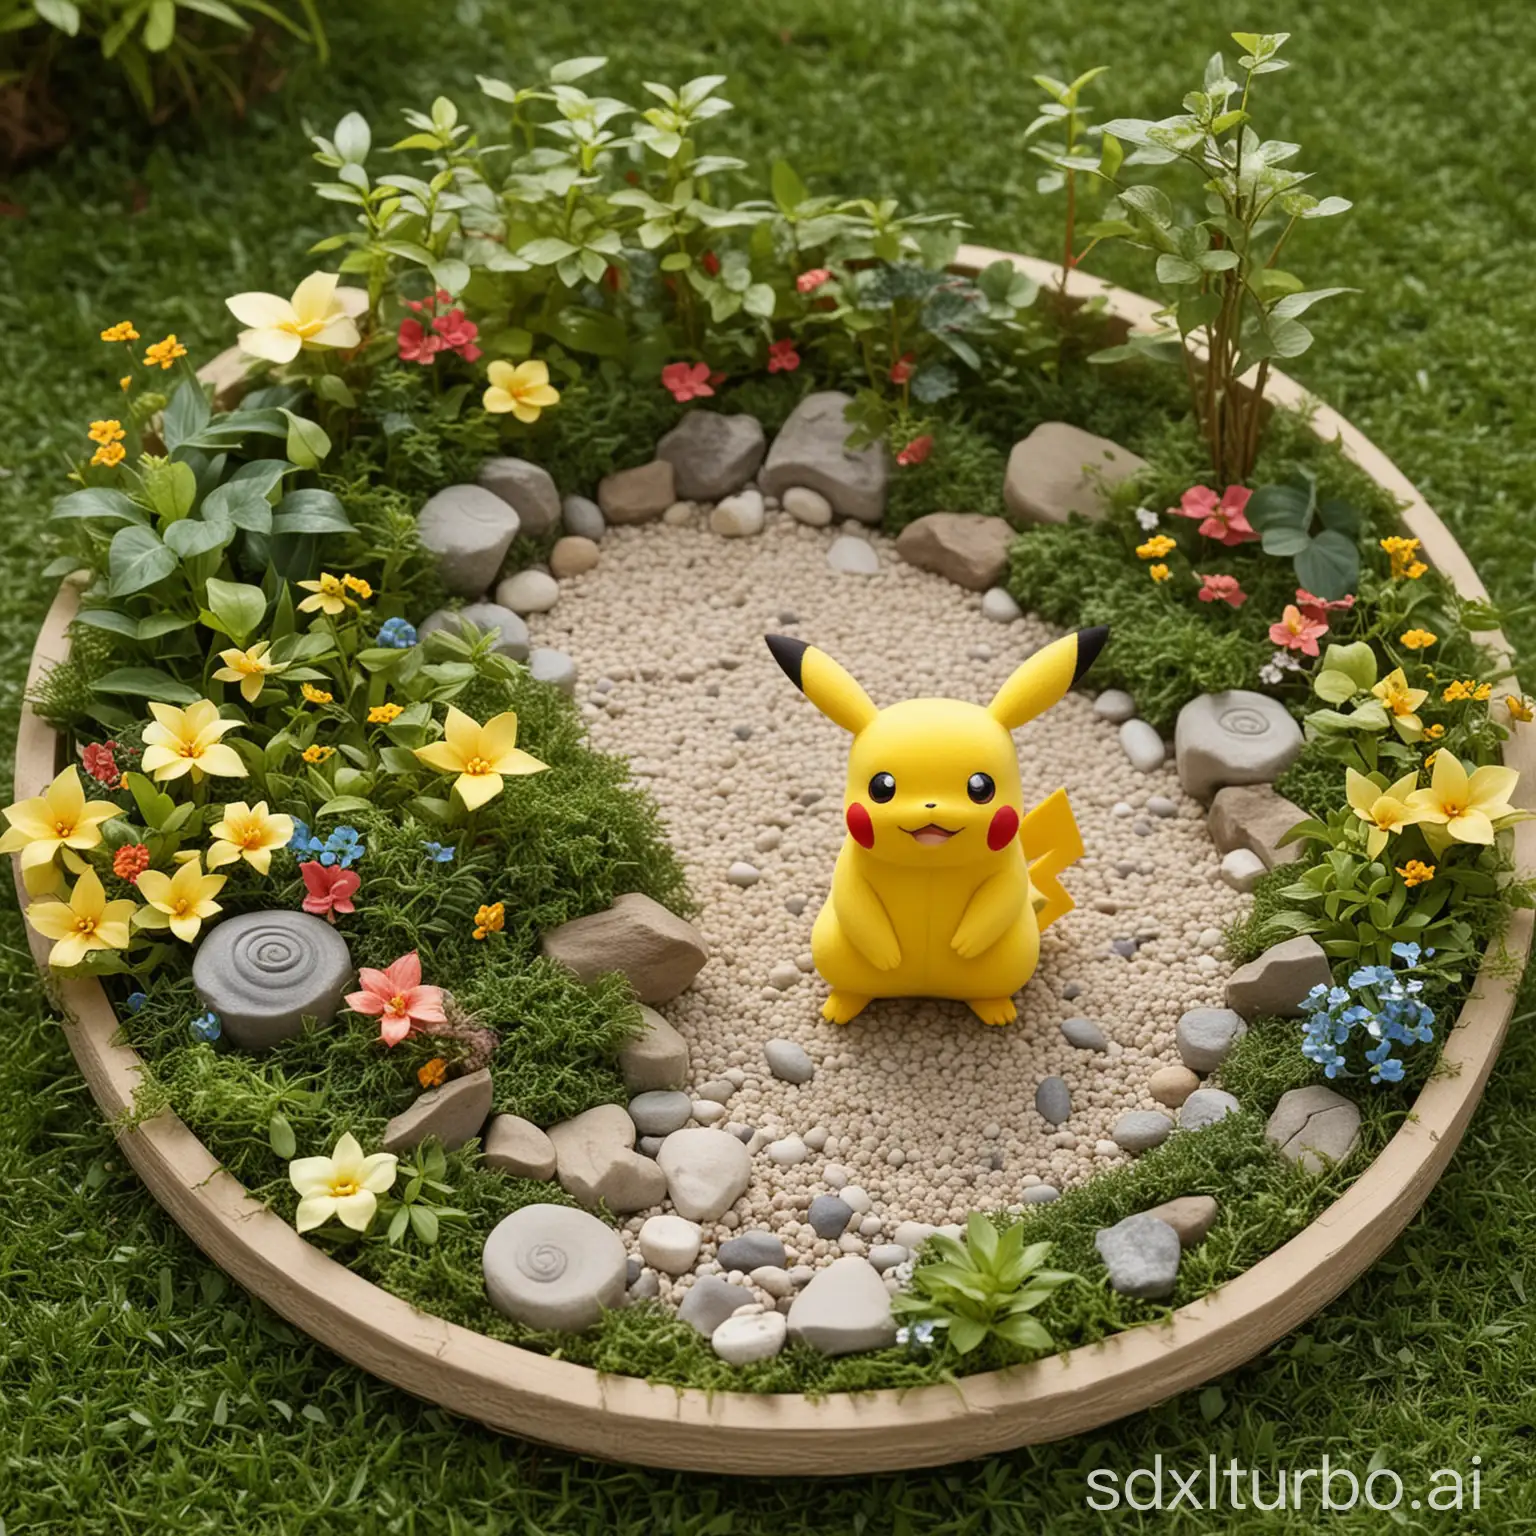 The Pokemon Pikachu in an enchanted Zen Garden